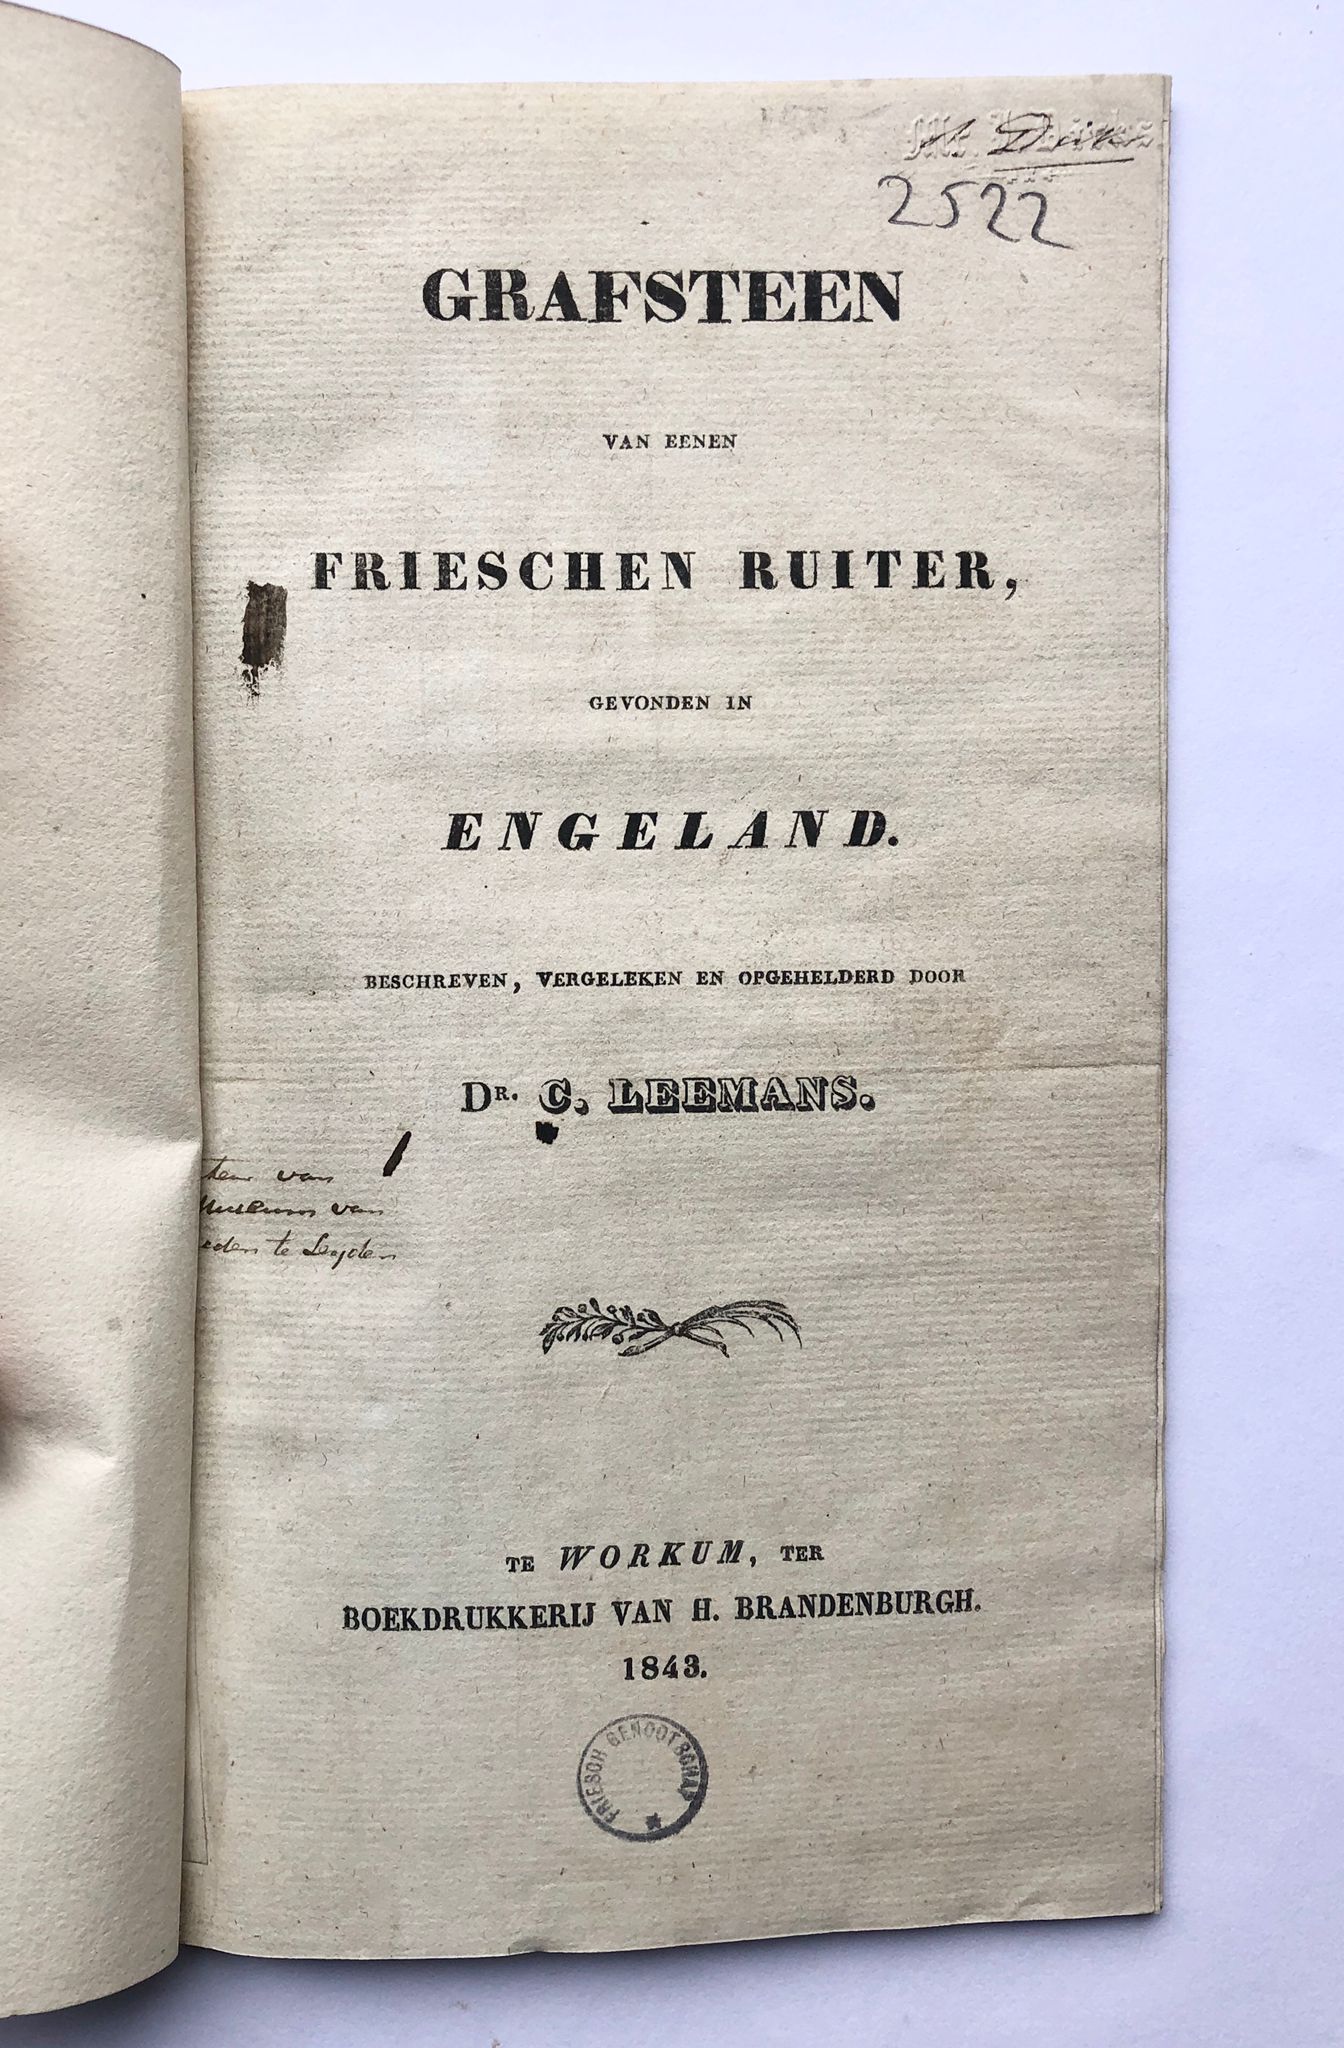 [Friesland, Workum] Grafsteen van eenen Frieschen ruiter, gevonden in Engeland. Boekdrukkerij van H. Brandenburgh, Te Workum, 1843, 20 pp.